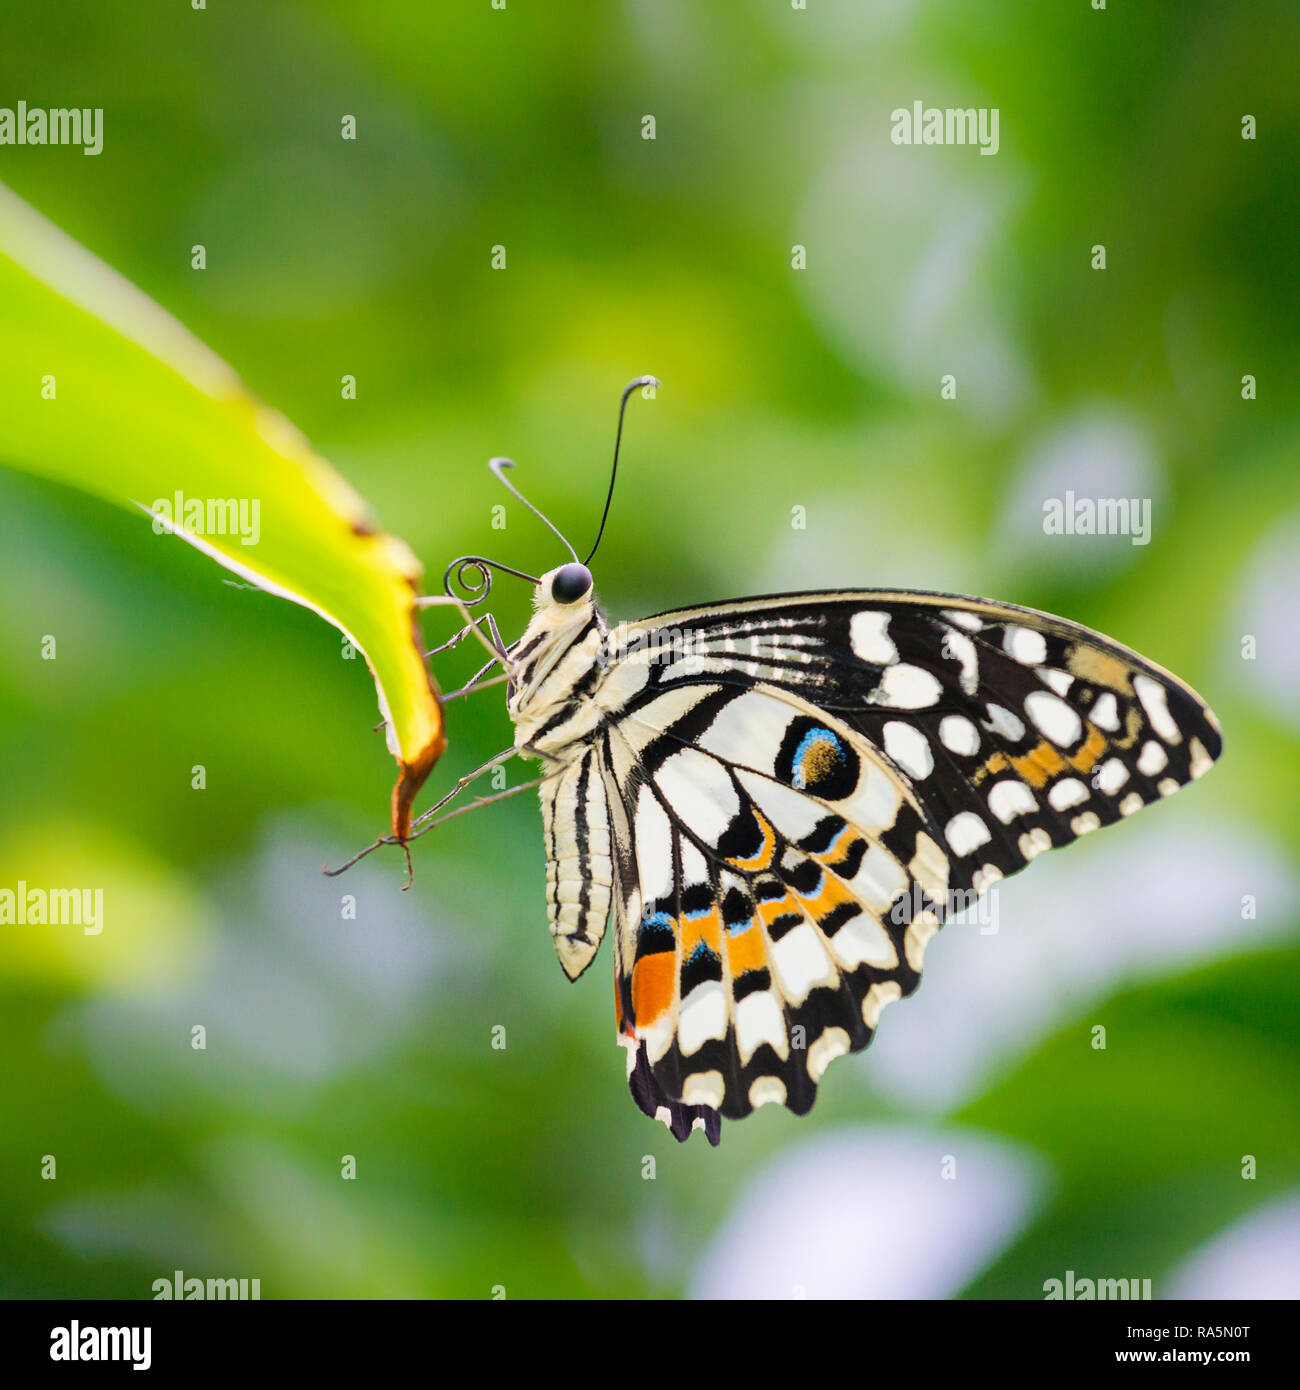 Cerrar la macro de una especie de cal común mariposa descansando en la punta de la hoja verde con follaje verde en segundo plano. Foto de stock